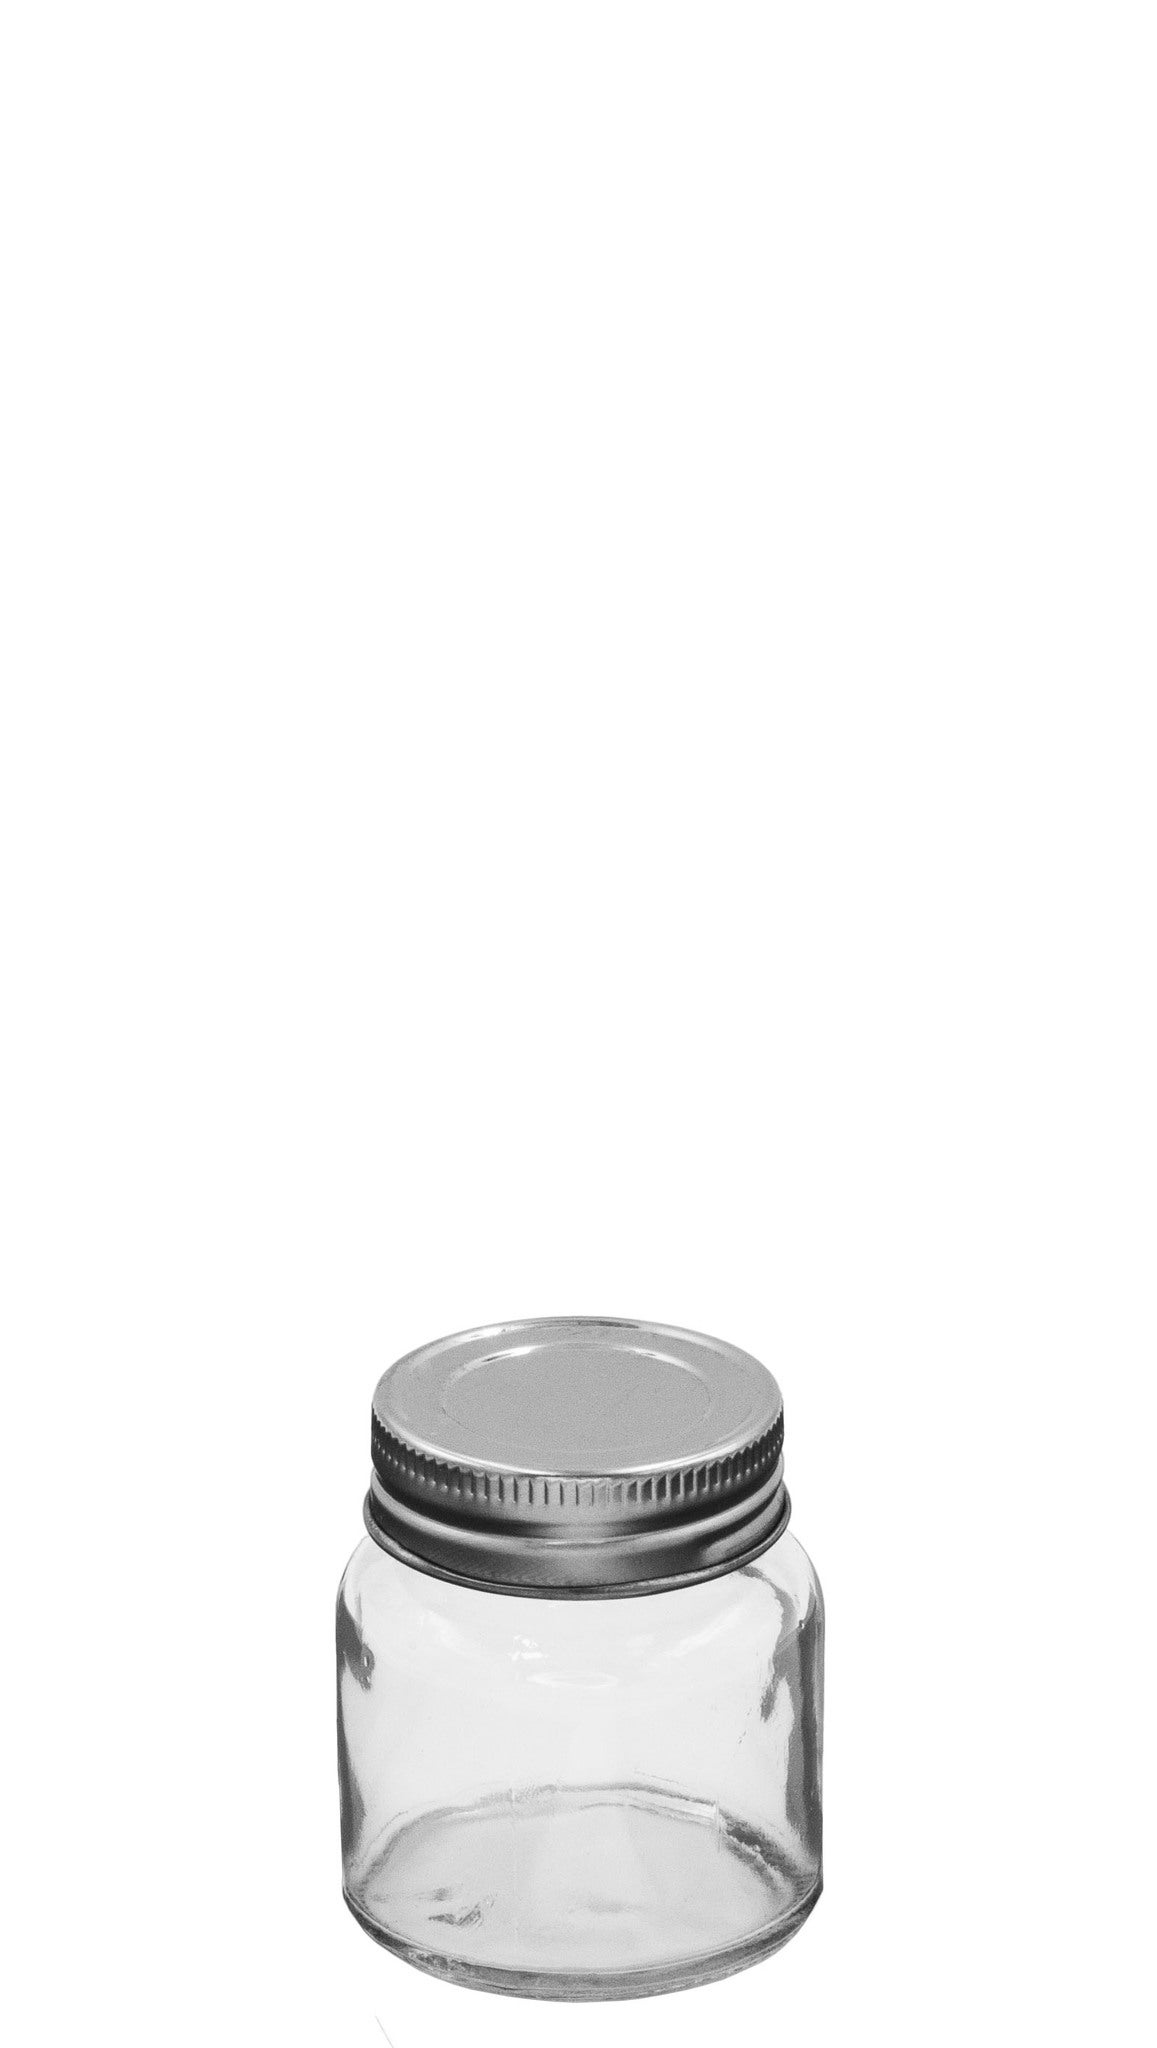 3L Bulk Storage Glass Jar Screw Top with lid